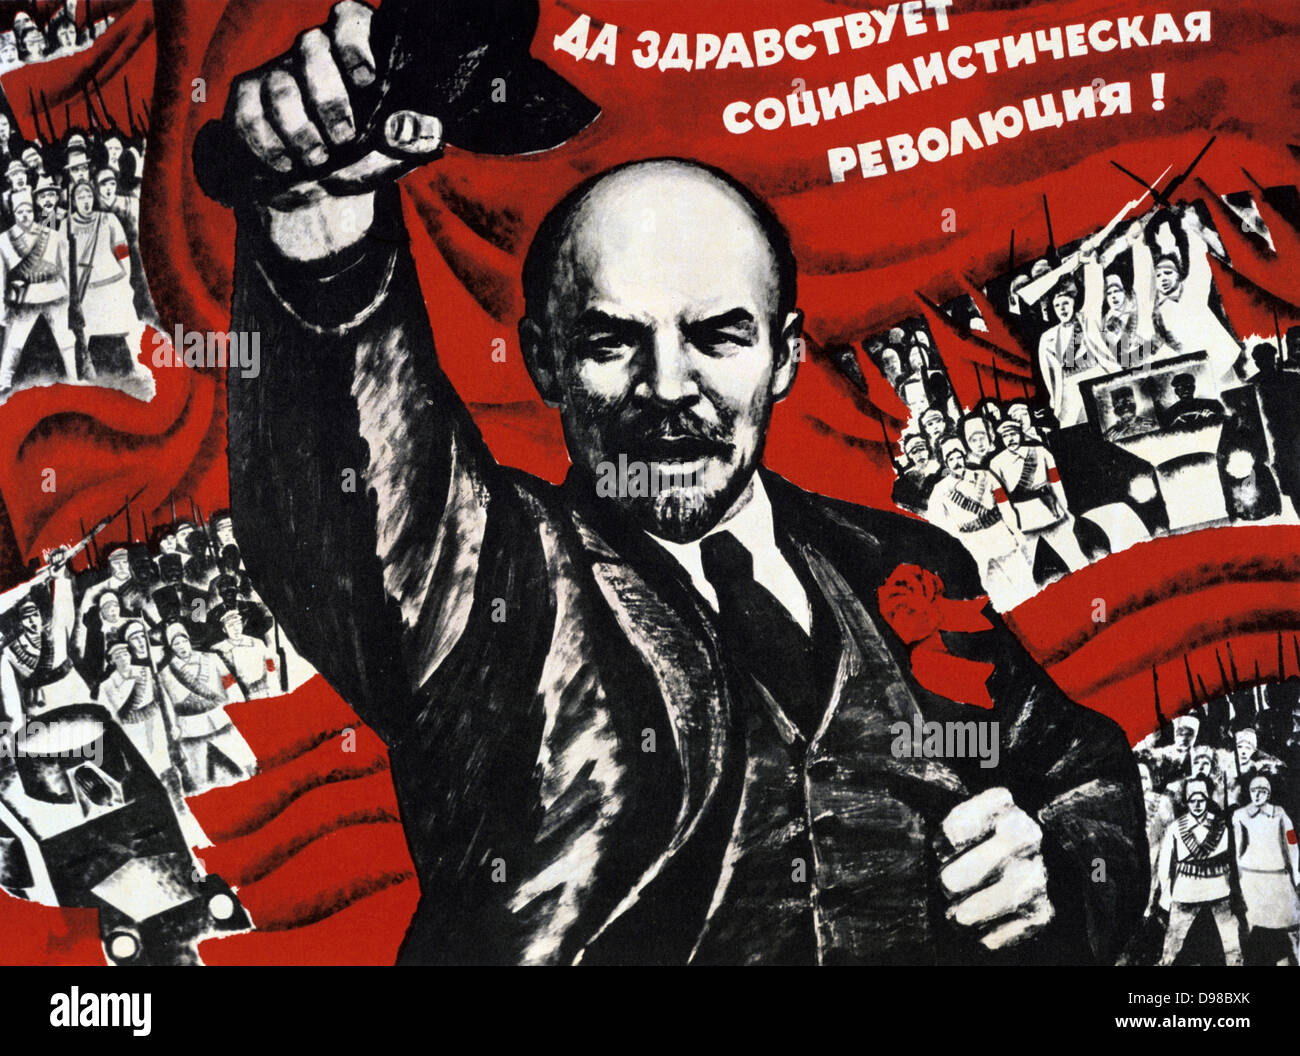 Russian Revolution, October 1917. Vladimir Ilyich Lenin (Ulyanov - 1870-1924) Russian revolutionary. Undated Communist poster. Stock Photo